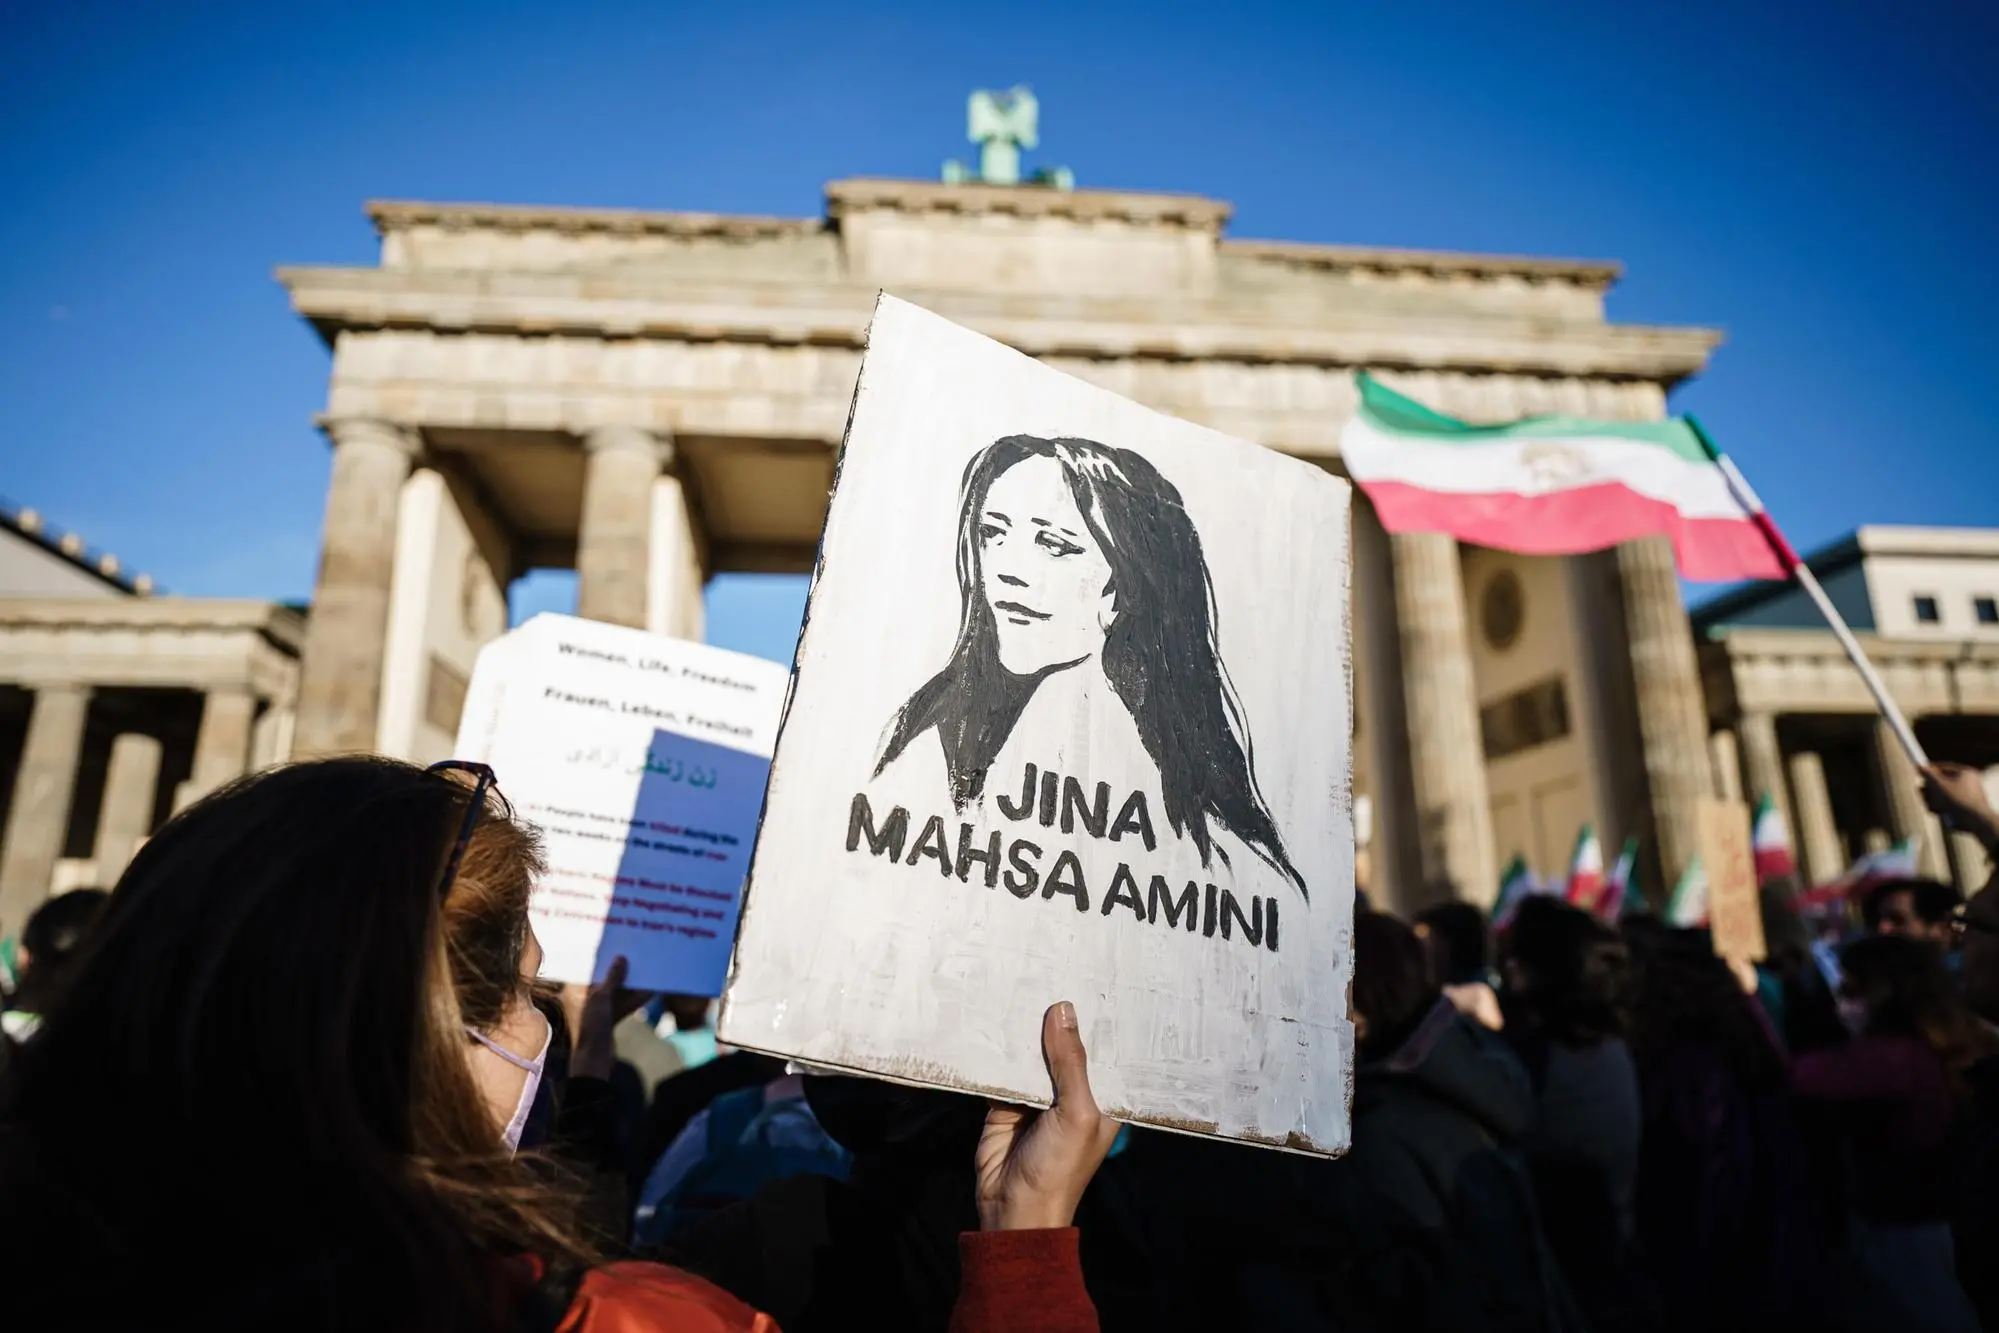 Una protesta a Berlino in favore di Mahsa Amini (Ansa)